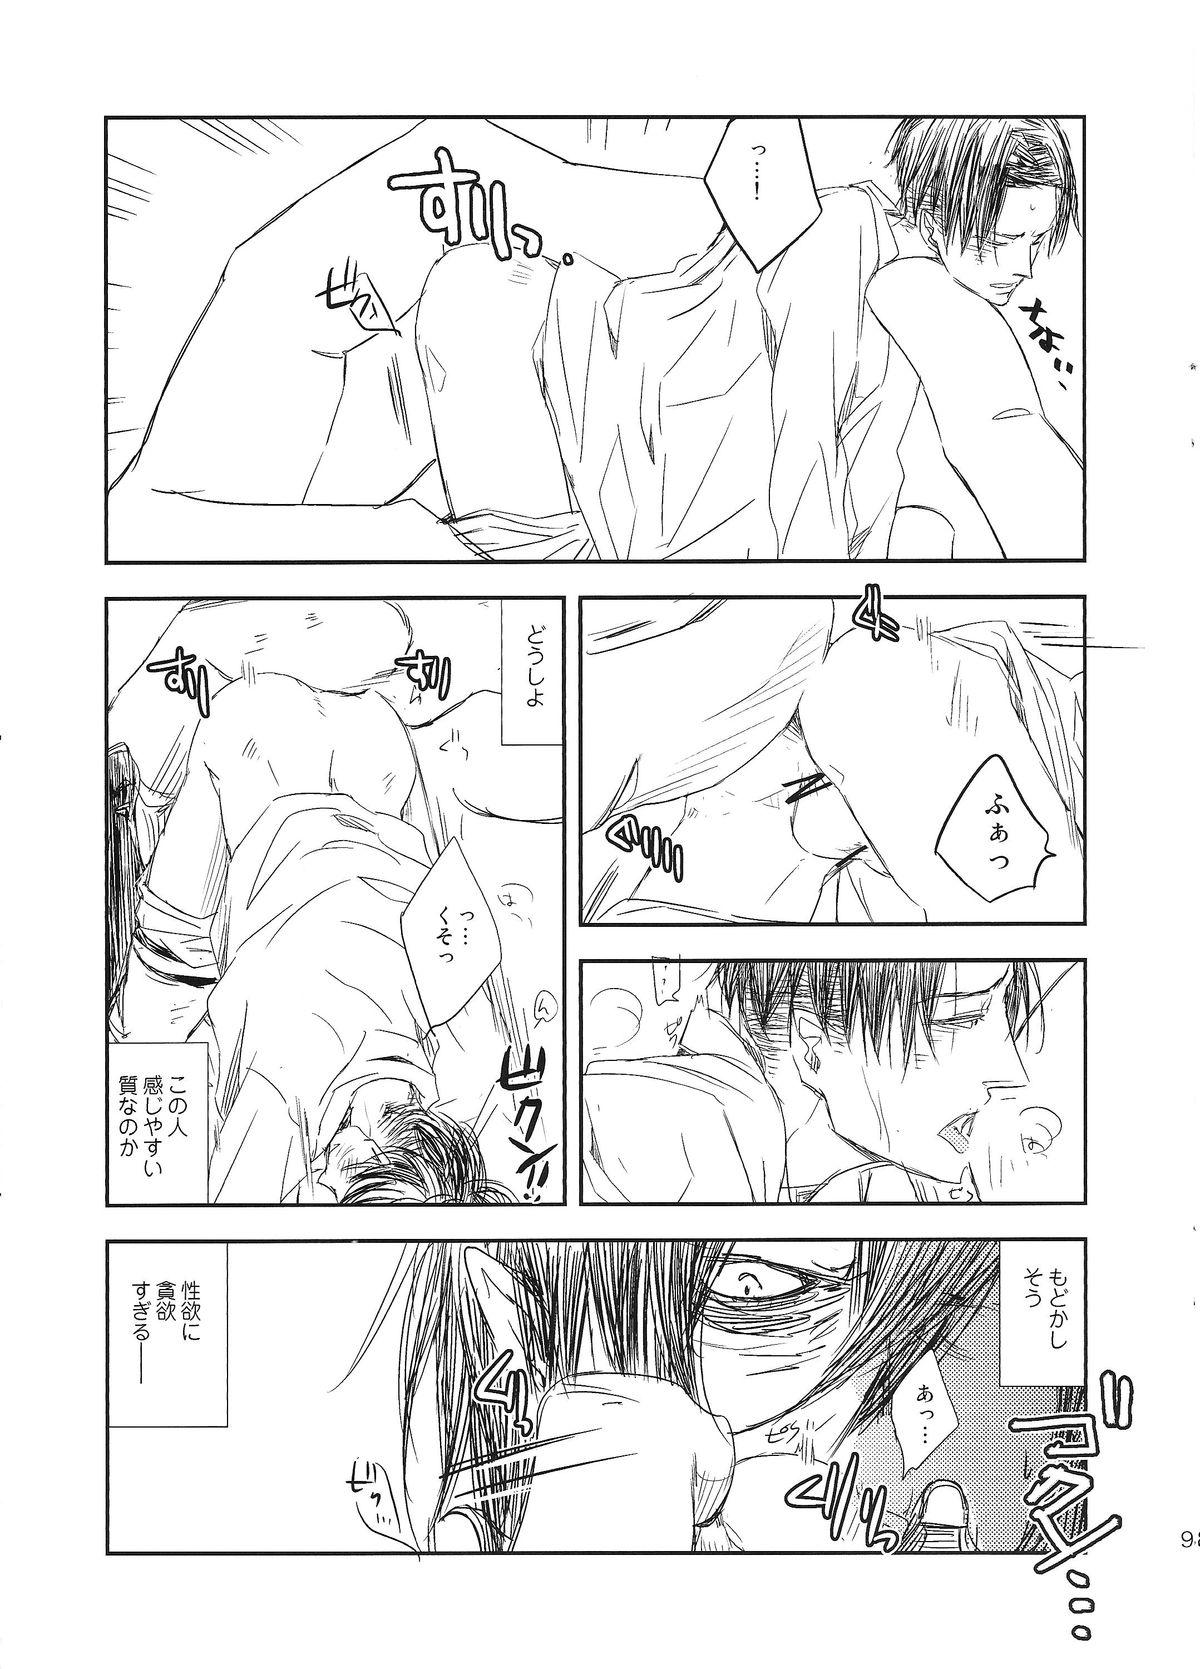 Trap Kyojin to! - Shingeki no kyojin Body Massage - Page 9